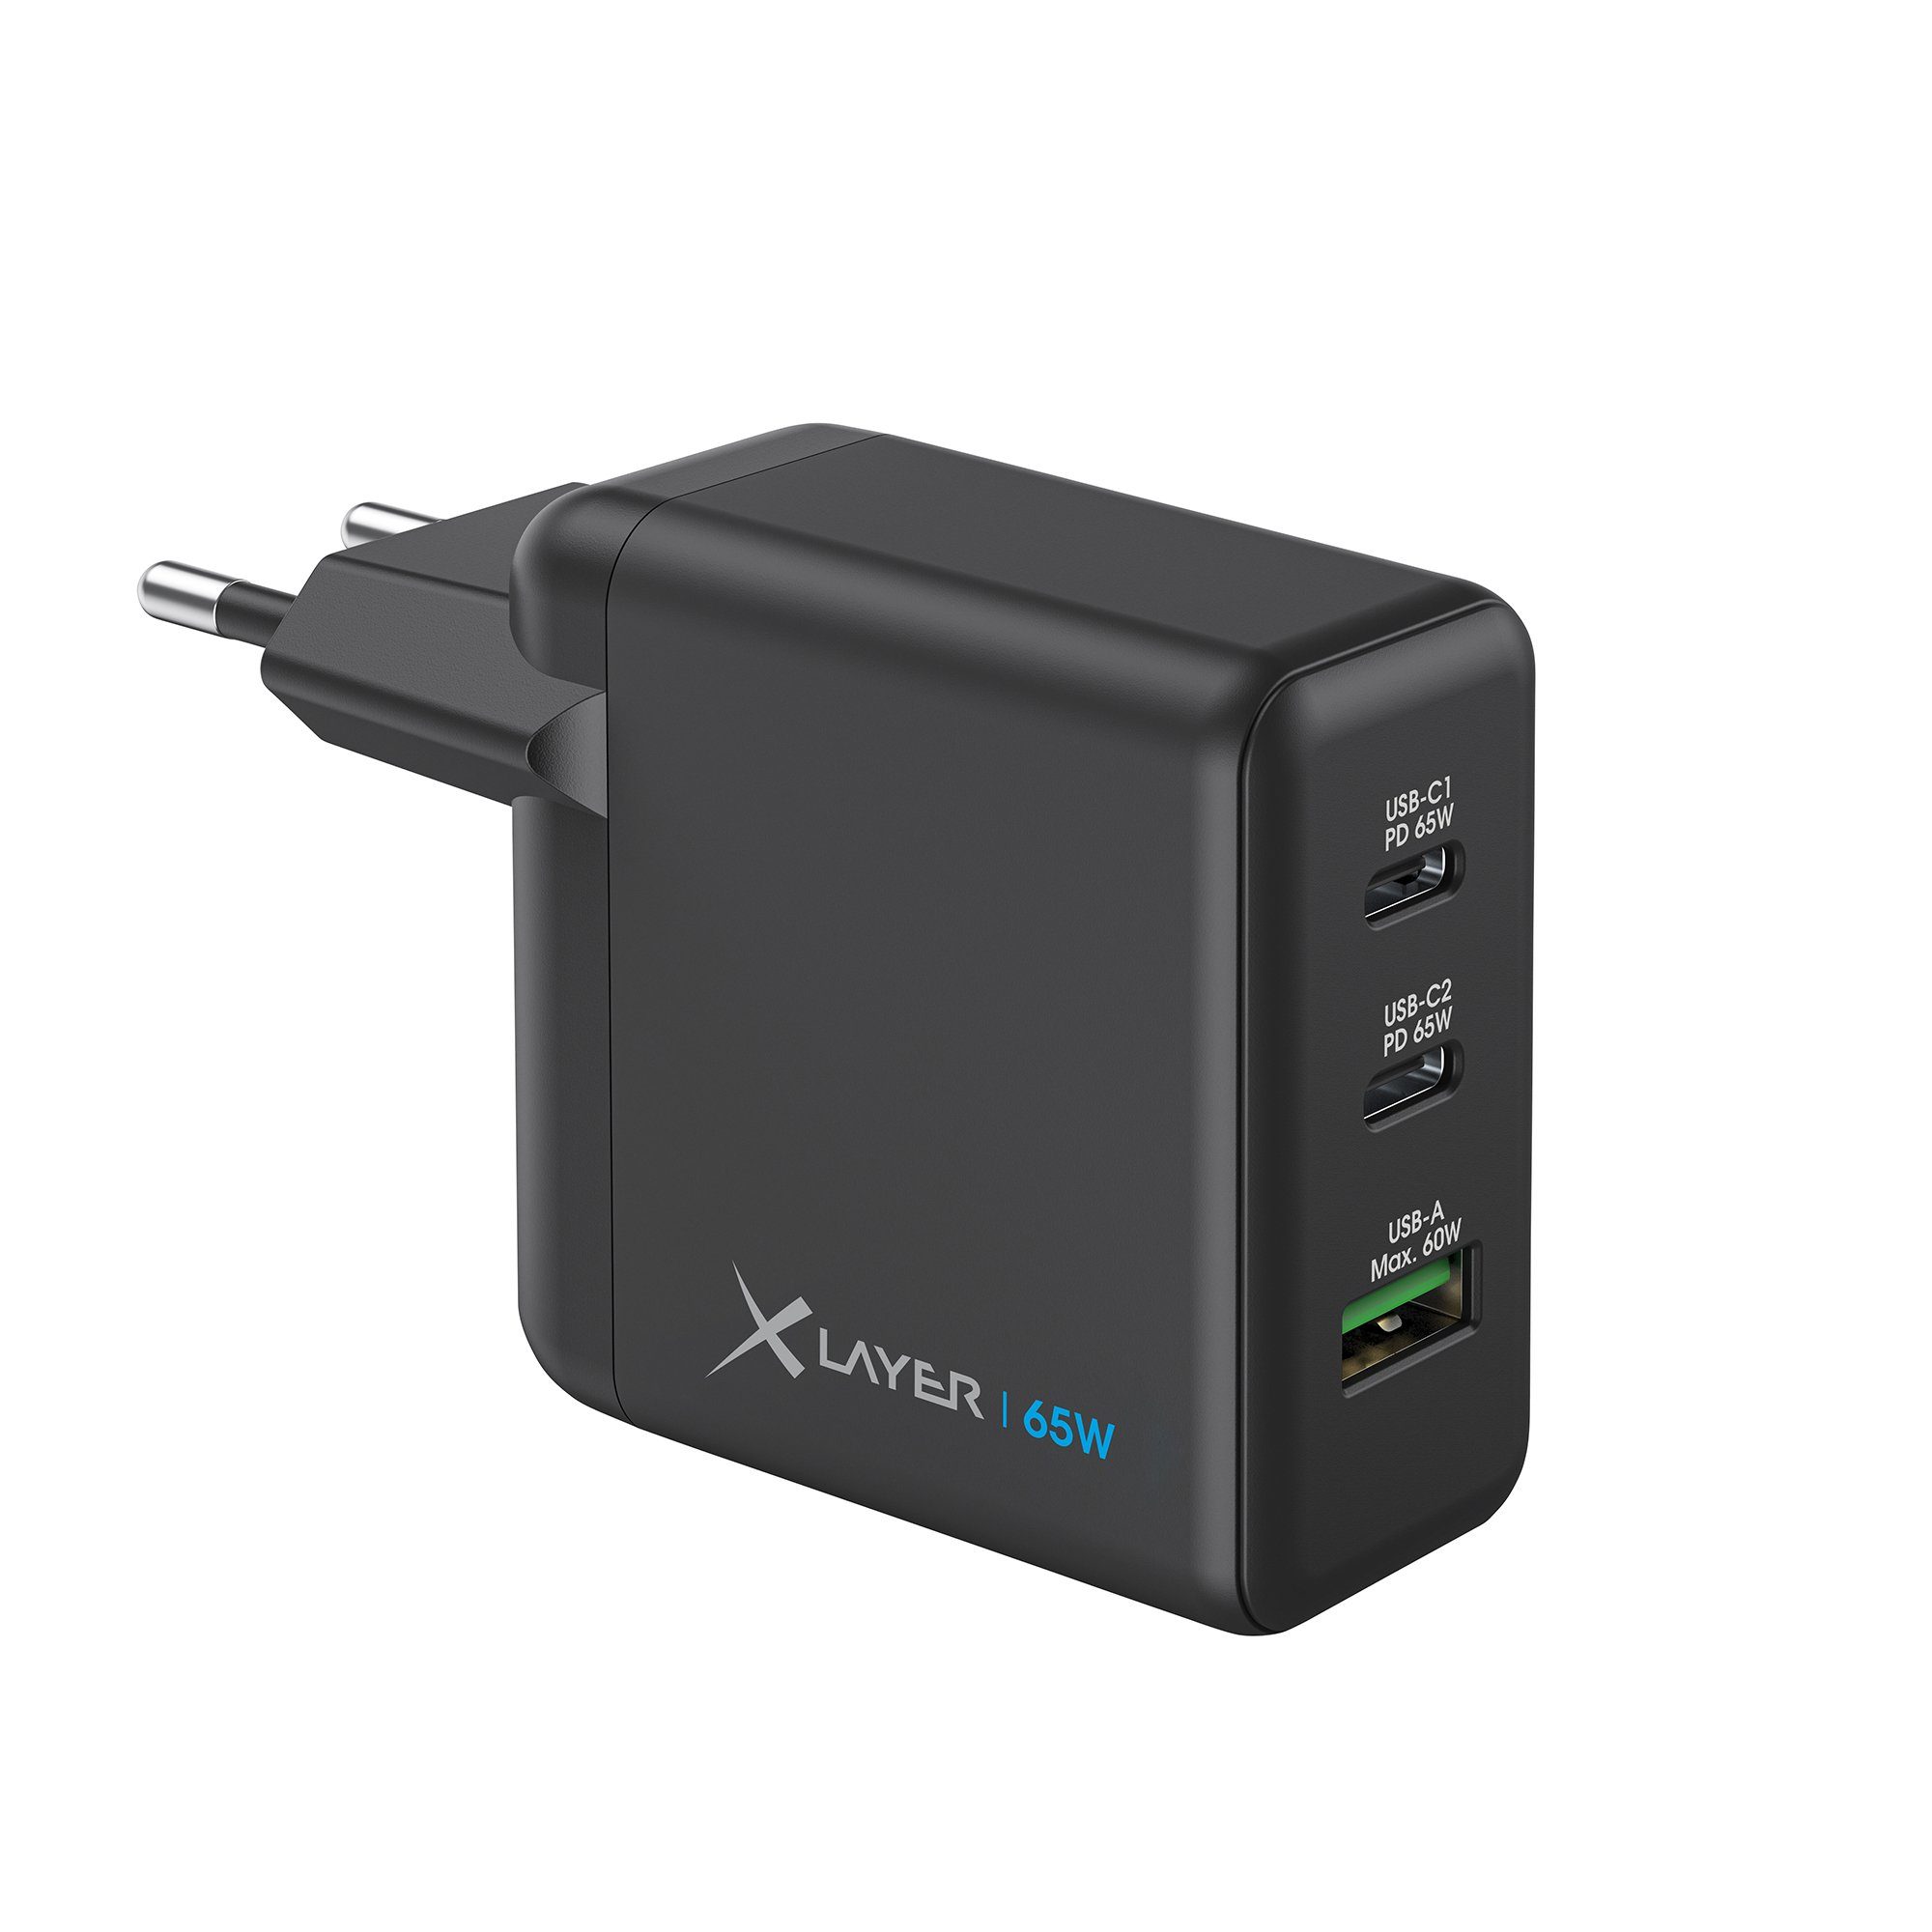 XLAYER Powercharger USB-C Schnellladegerät I 65W PD I GaN Charger I 3-Port Smartphone-Ladegerät